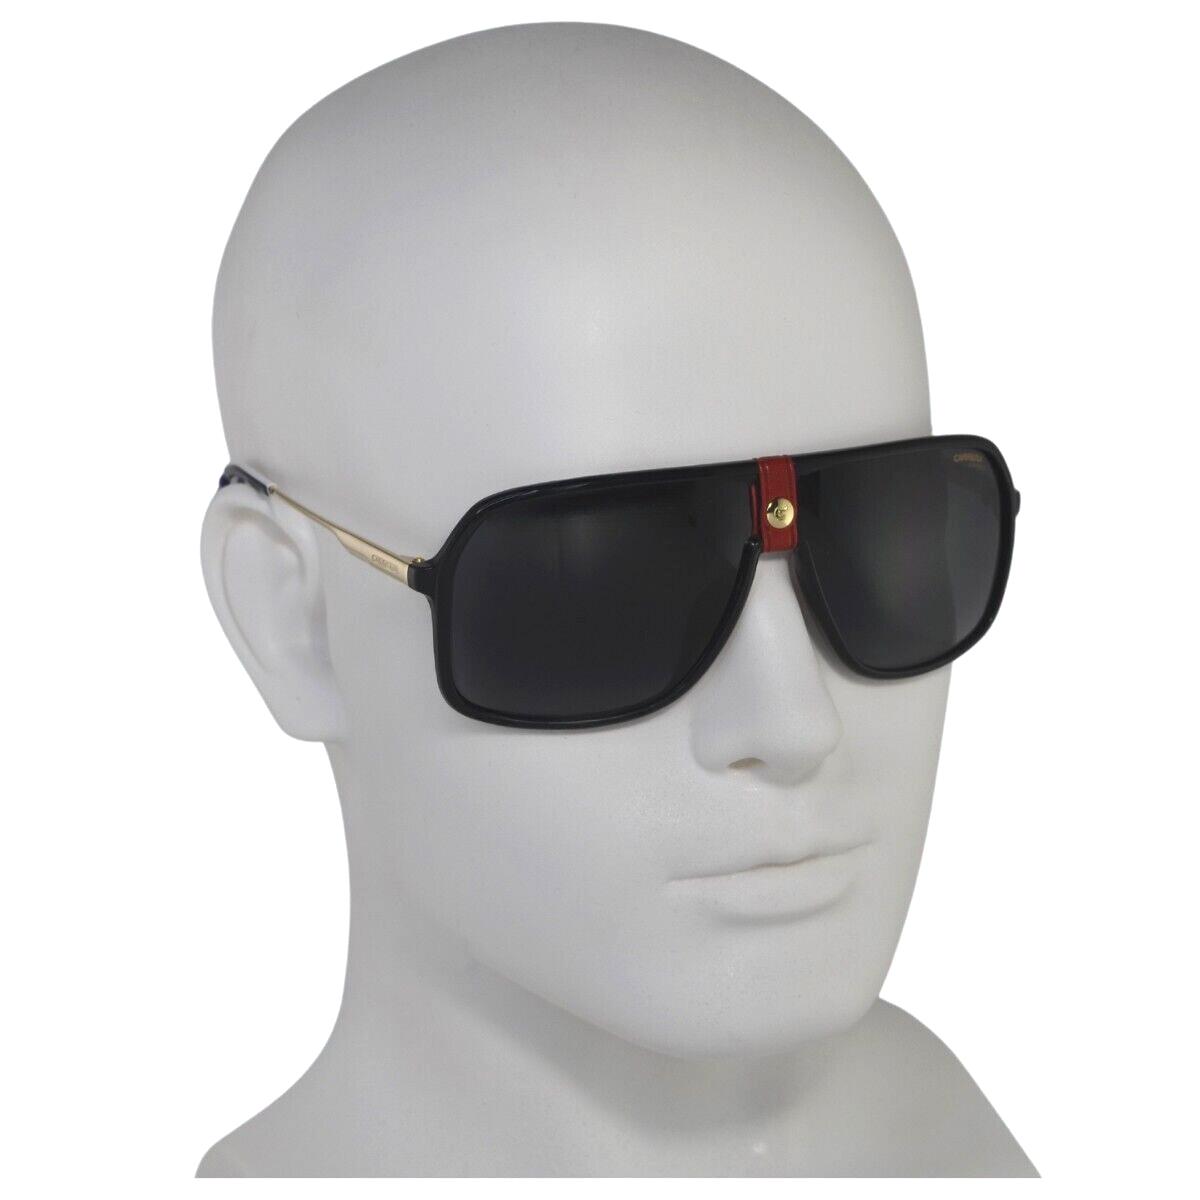 Carrera sunglasses  - Black Frame, Gray Lens 0